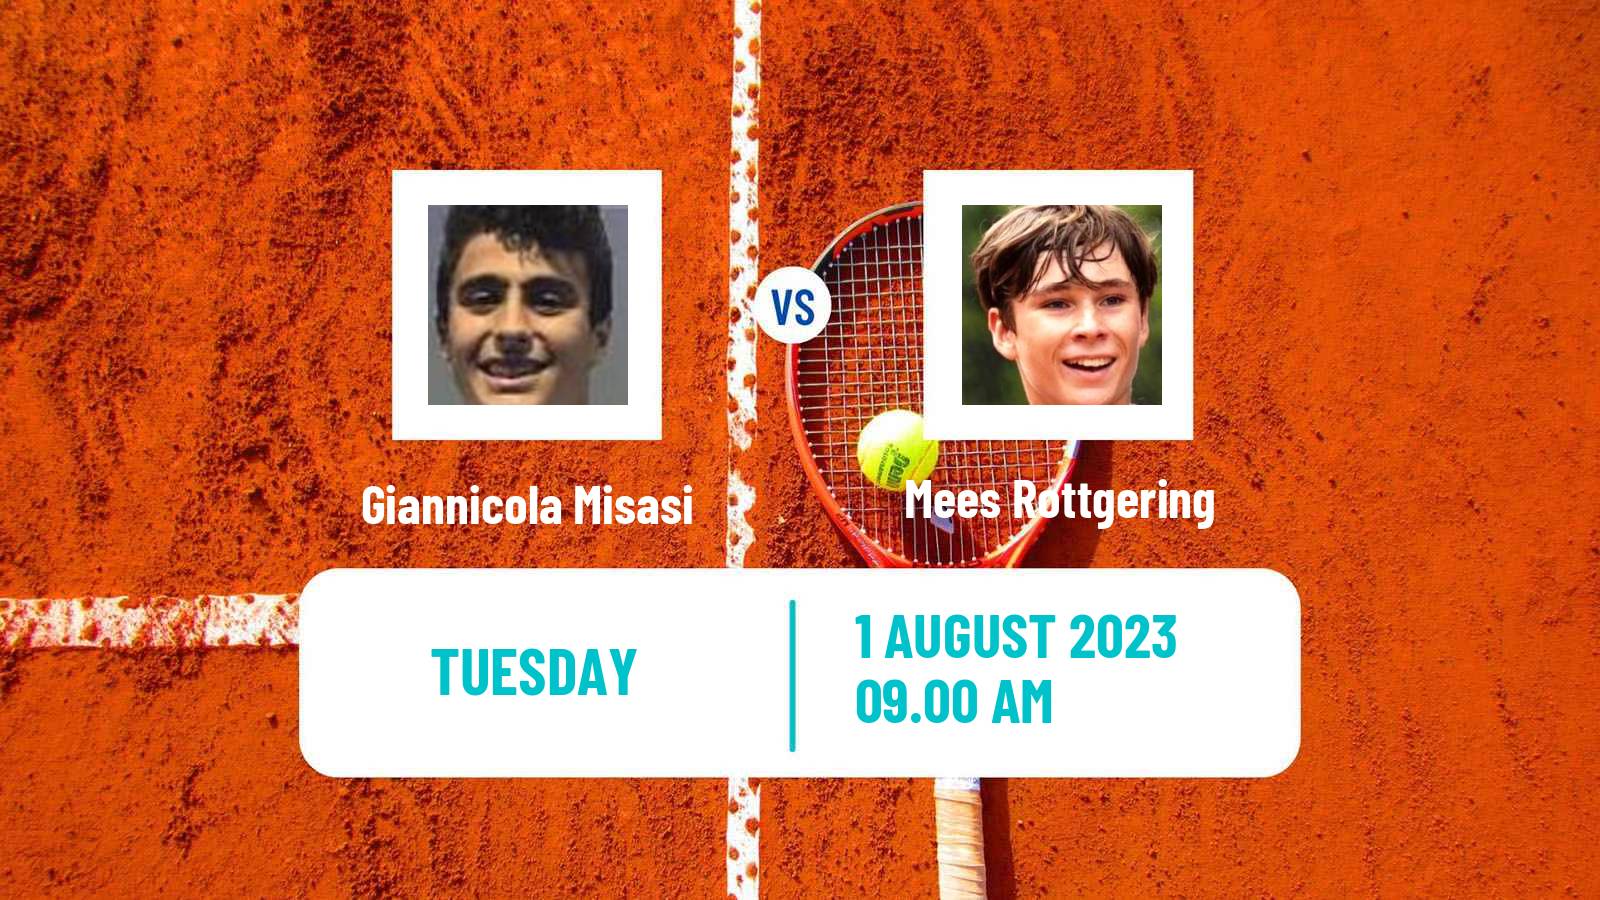 Tennis ITF M15 Eindhoven Men Giannicola Misasi - Mees Rottgering